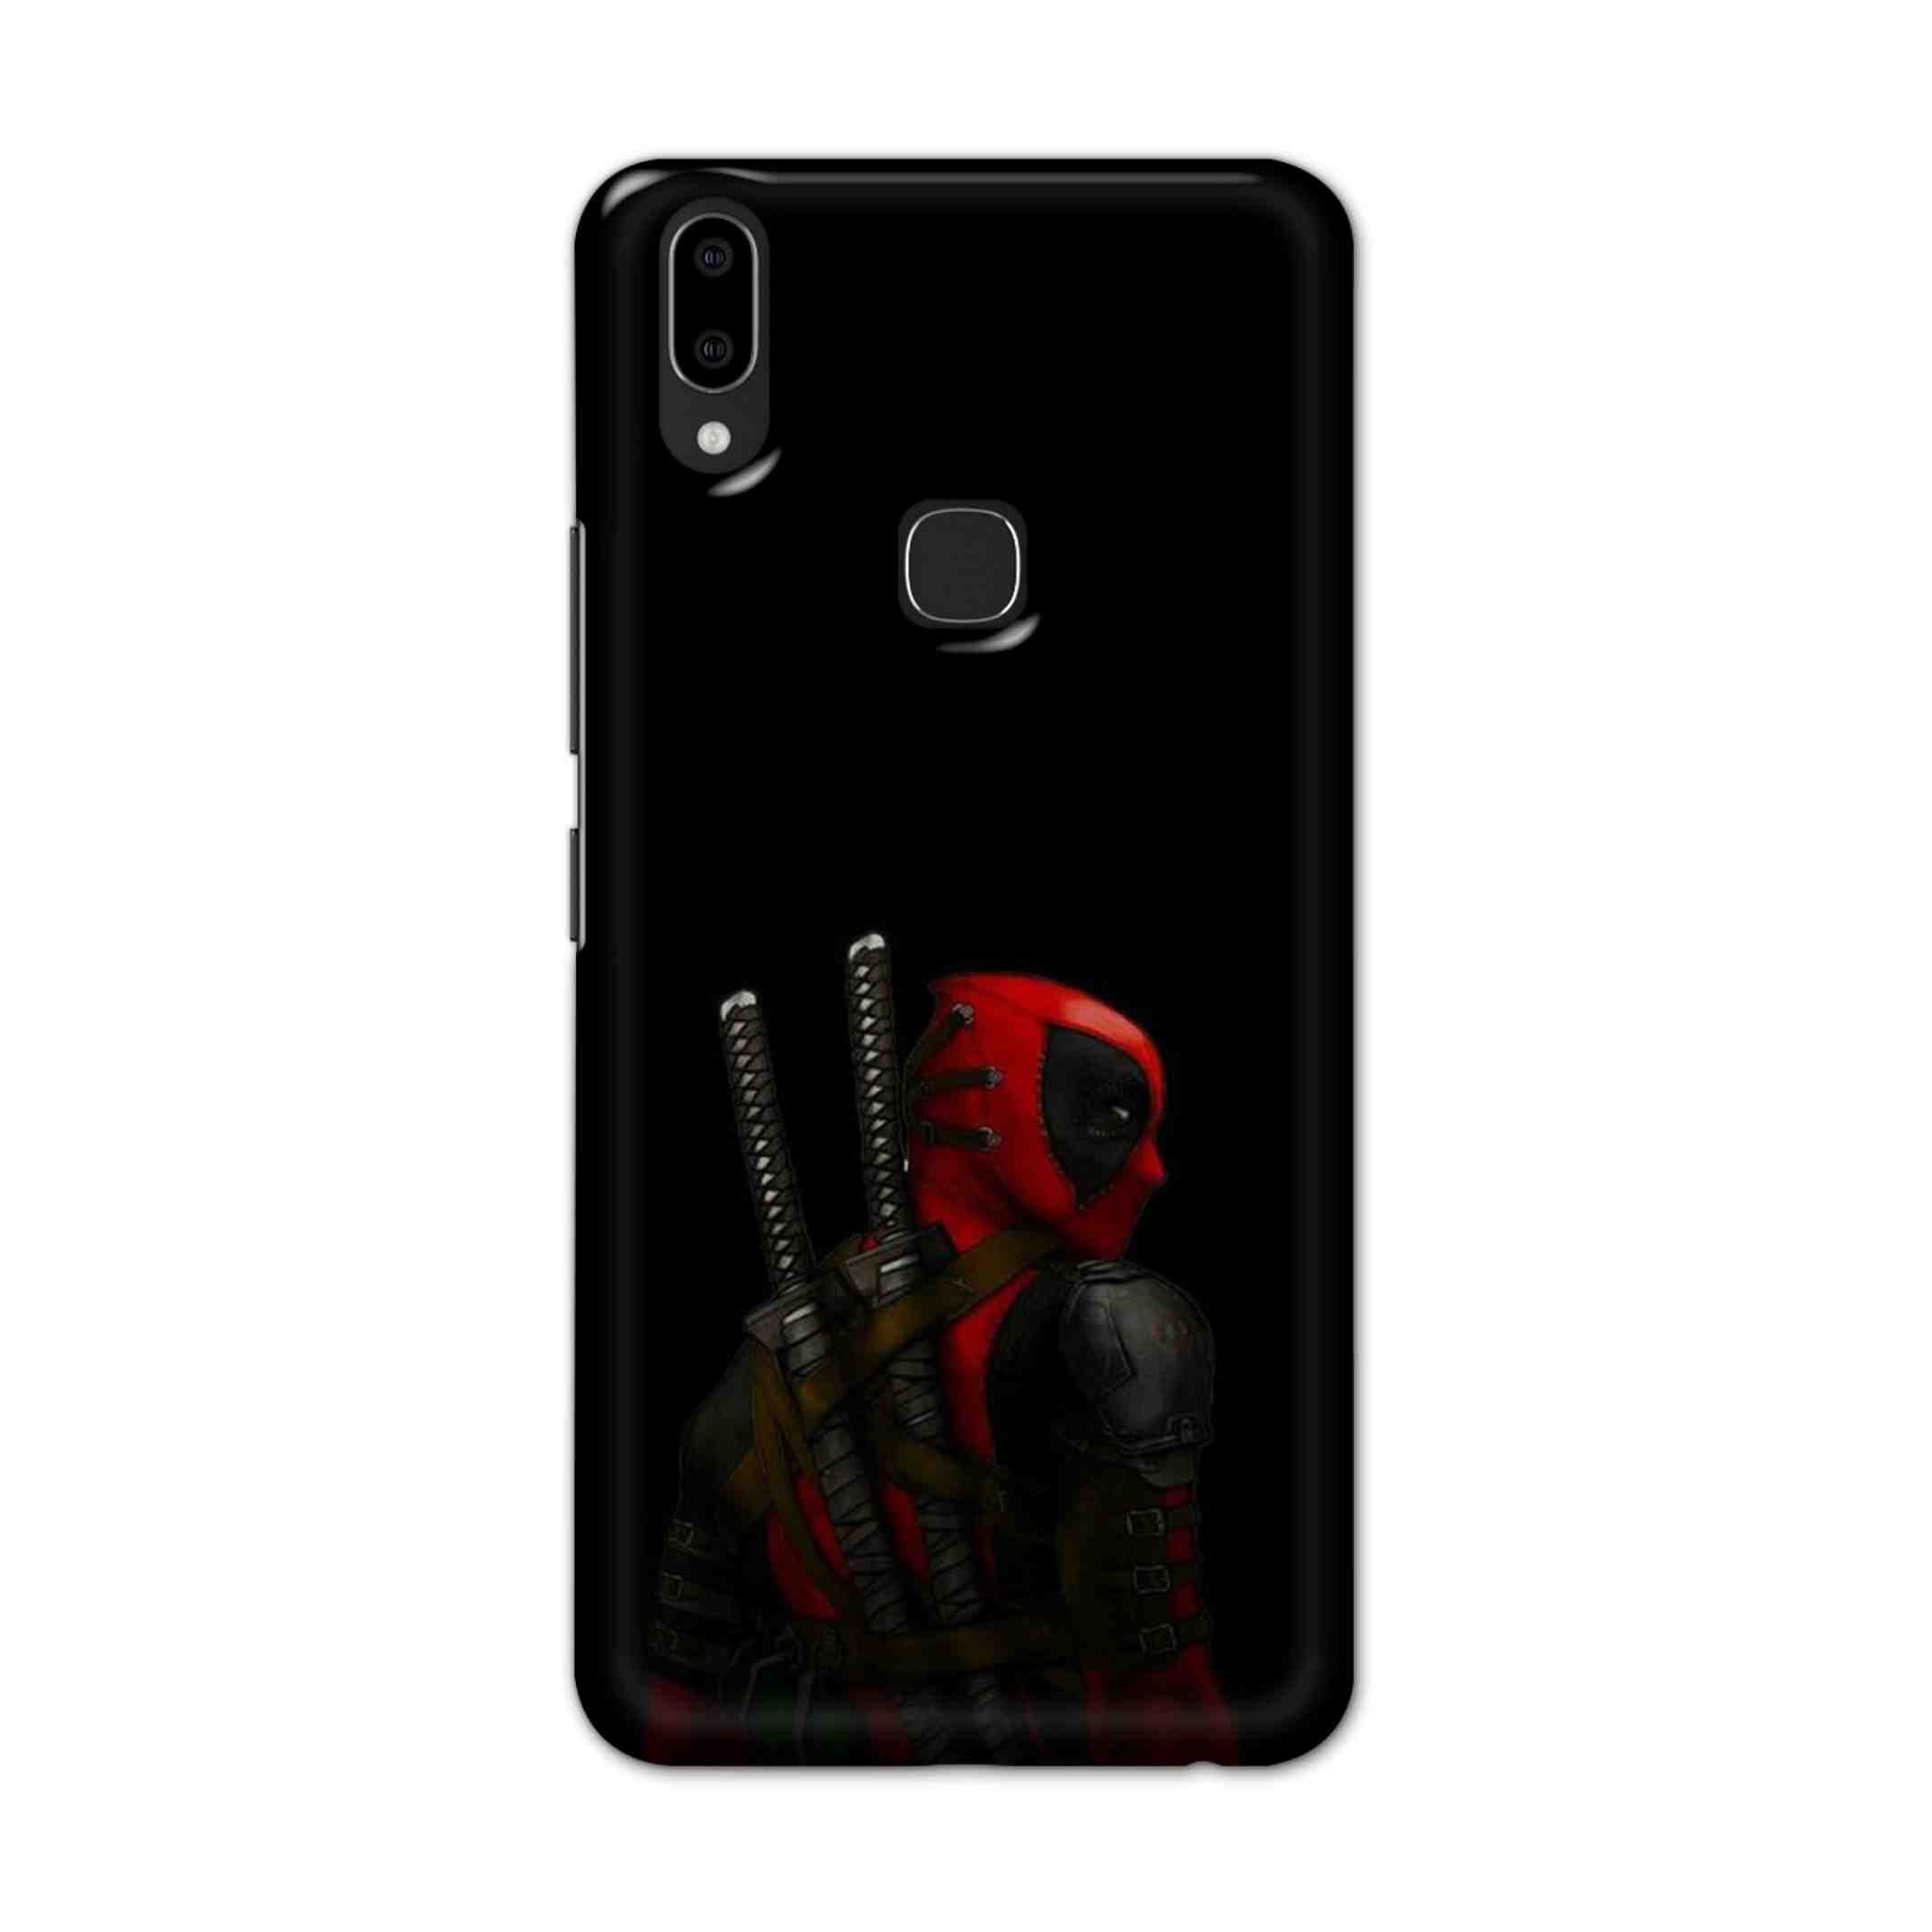 Buy Deadpool Hard Back Mobile Phone Case Cover For Vivo V9 / V9 Youth Online